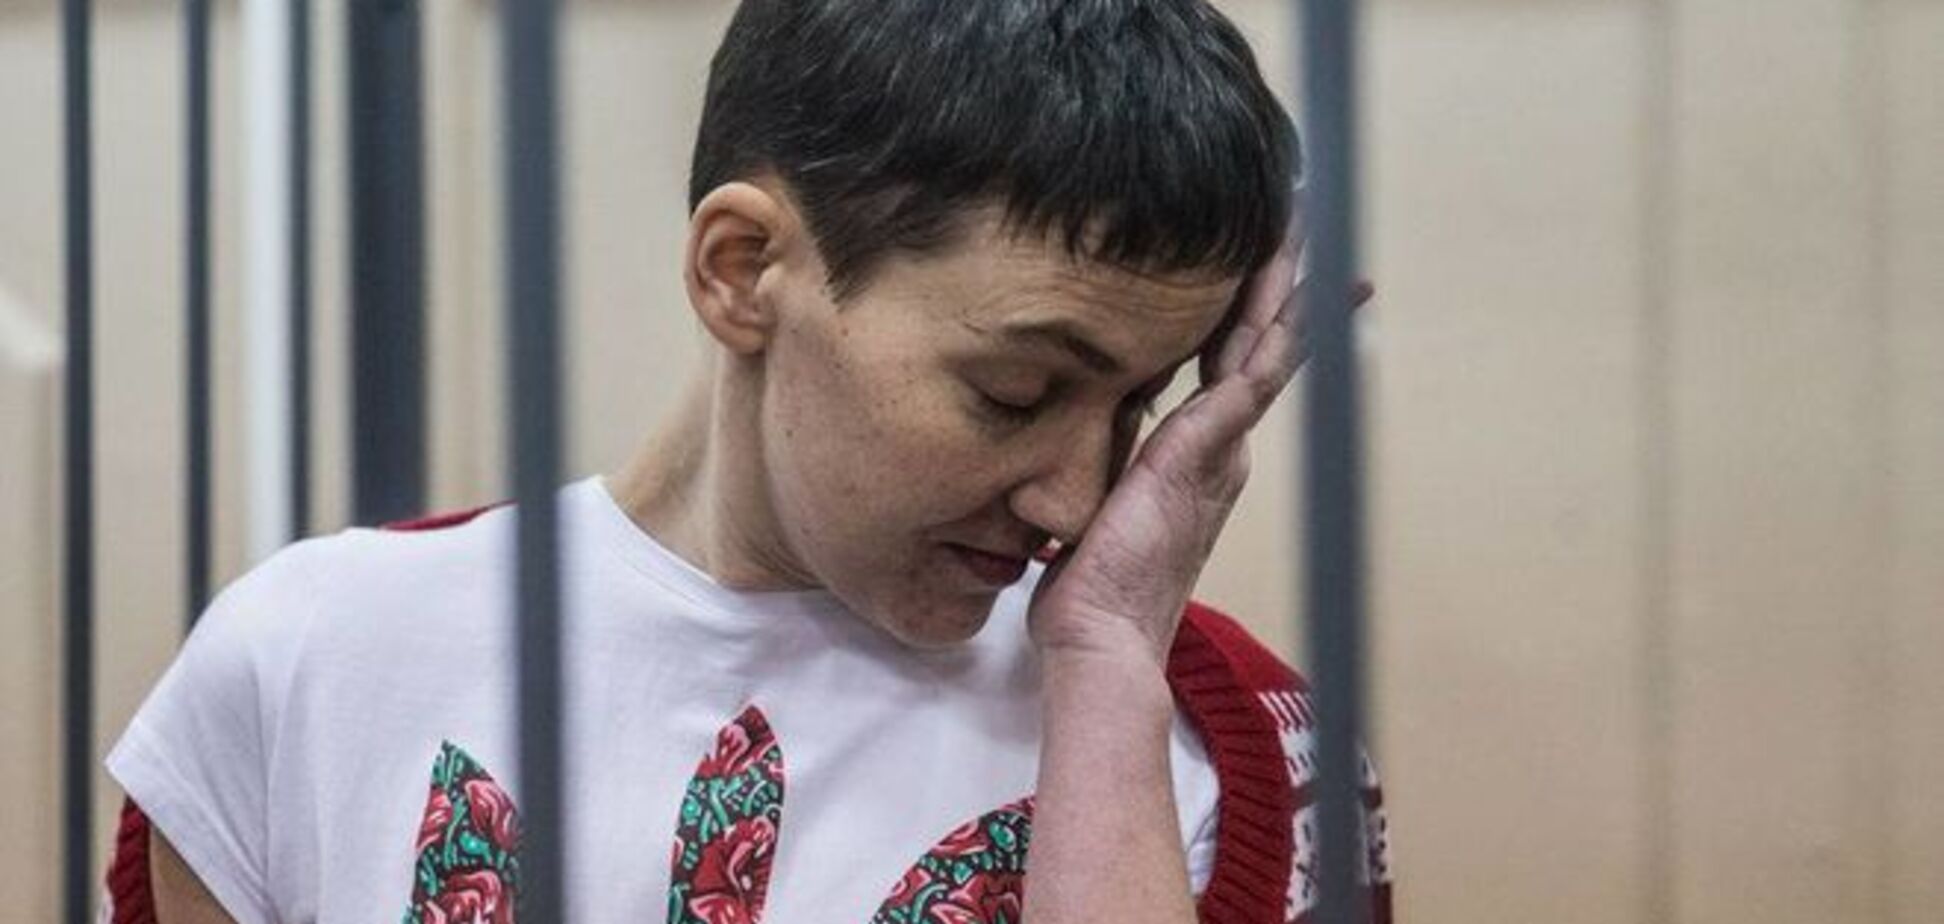 Журналистам вход воспрещен: россияне решили судить Савченко за закрытой дверью